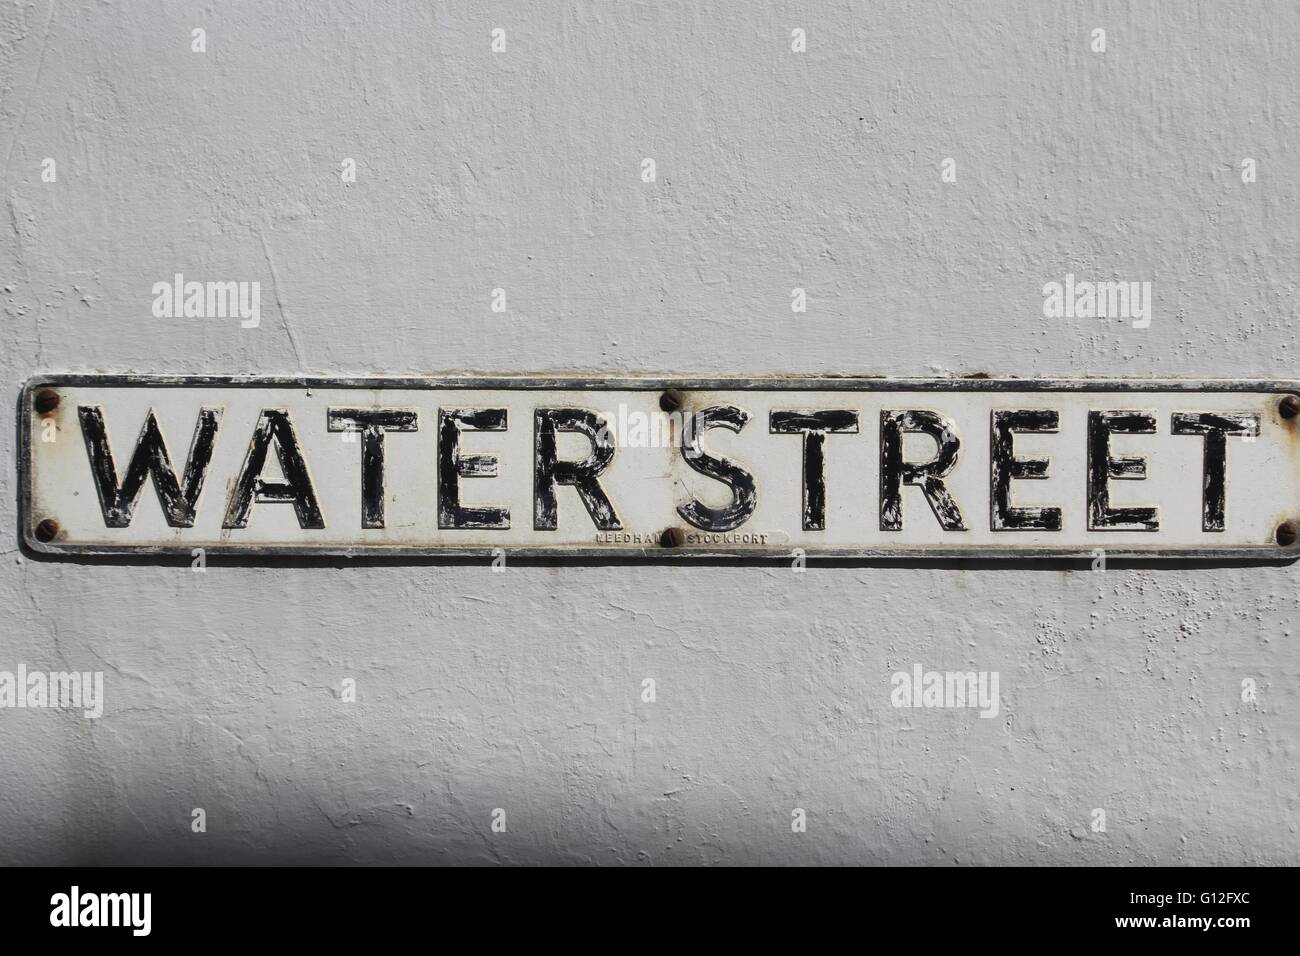 Metal viejo calle signo con letras negras sobre fondo blanco diciendo "Water Street' montado sobre un muro de piedra pintado de blanco. Foto de stock